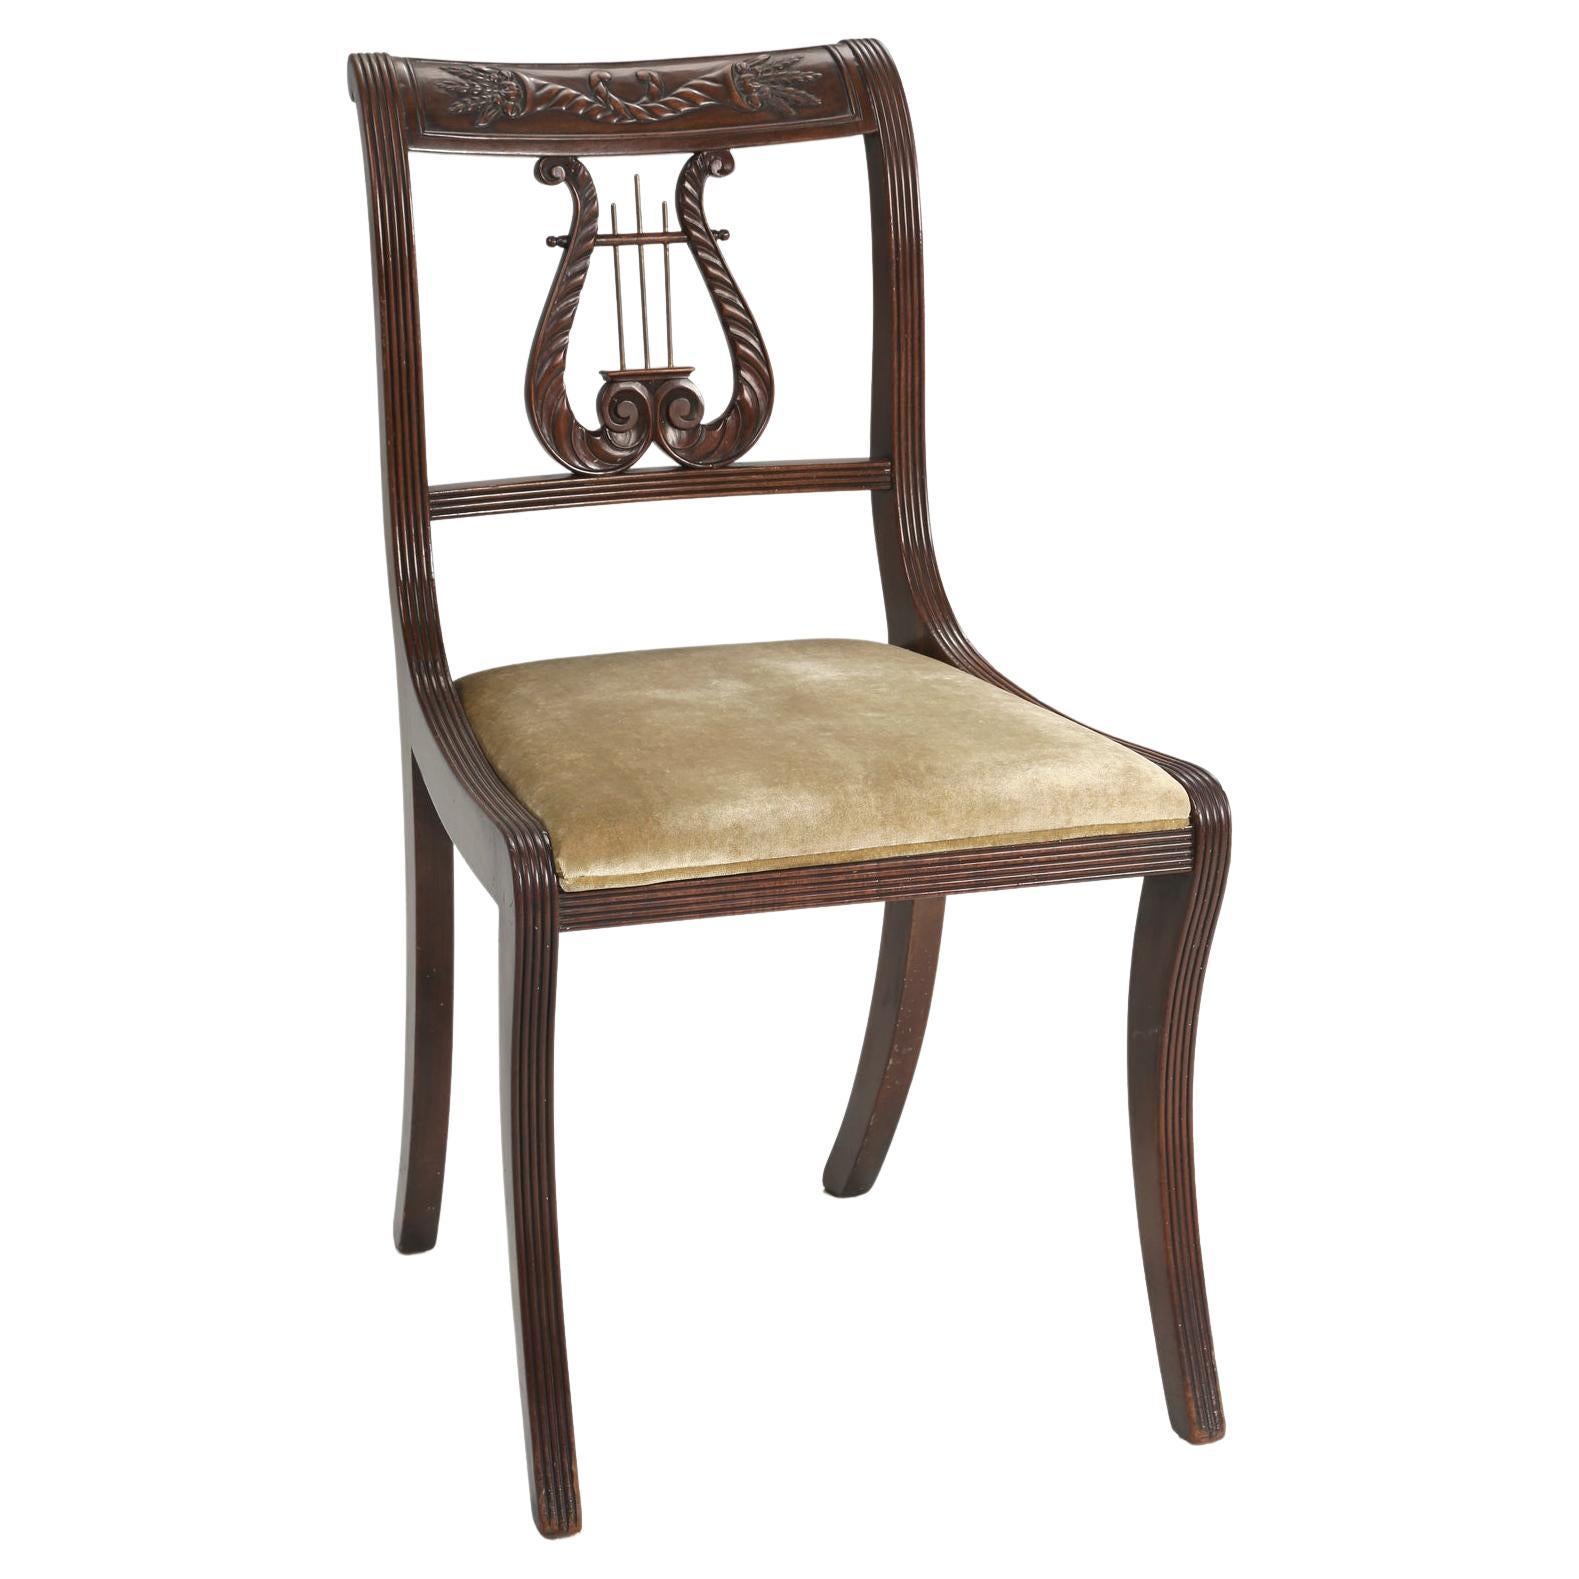 Antica sedia inglese con schienale a lira in mogano della metà del 1800  circa Restaurata in vendita su 1stDibs | sedie vecchie restaurate